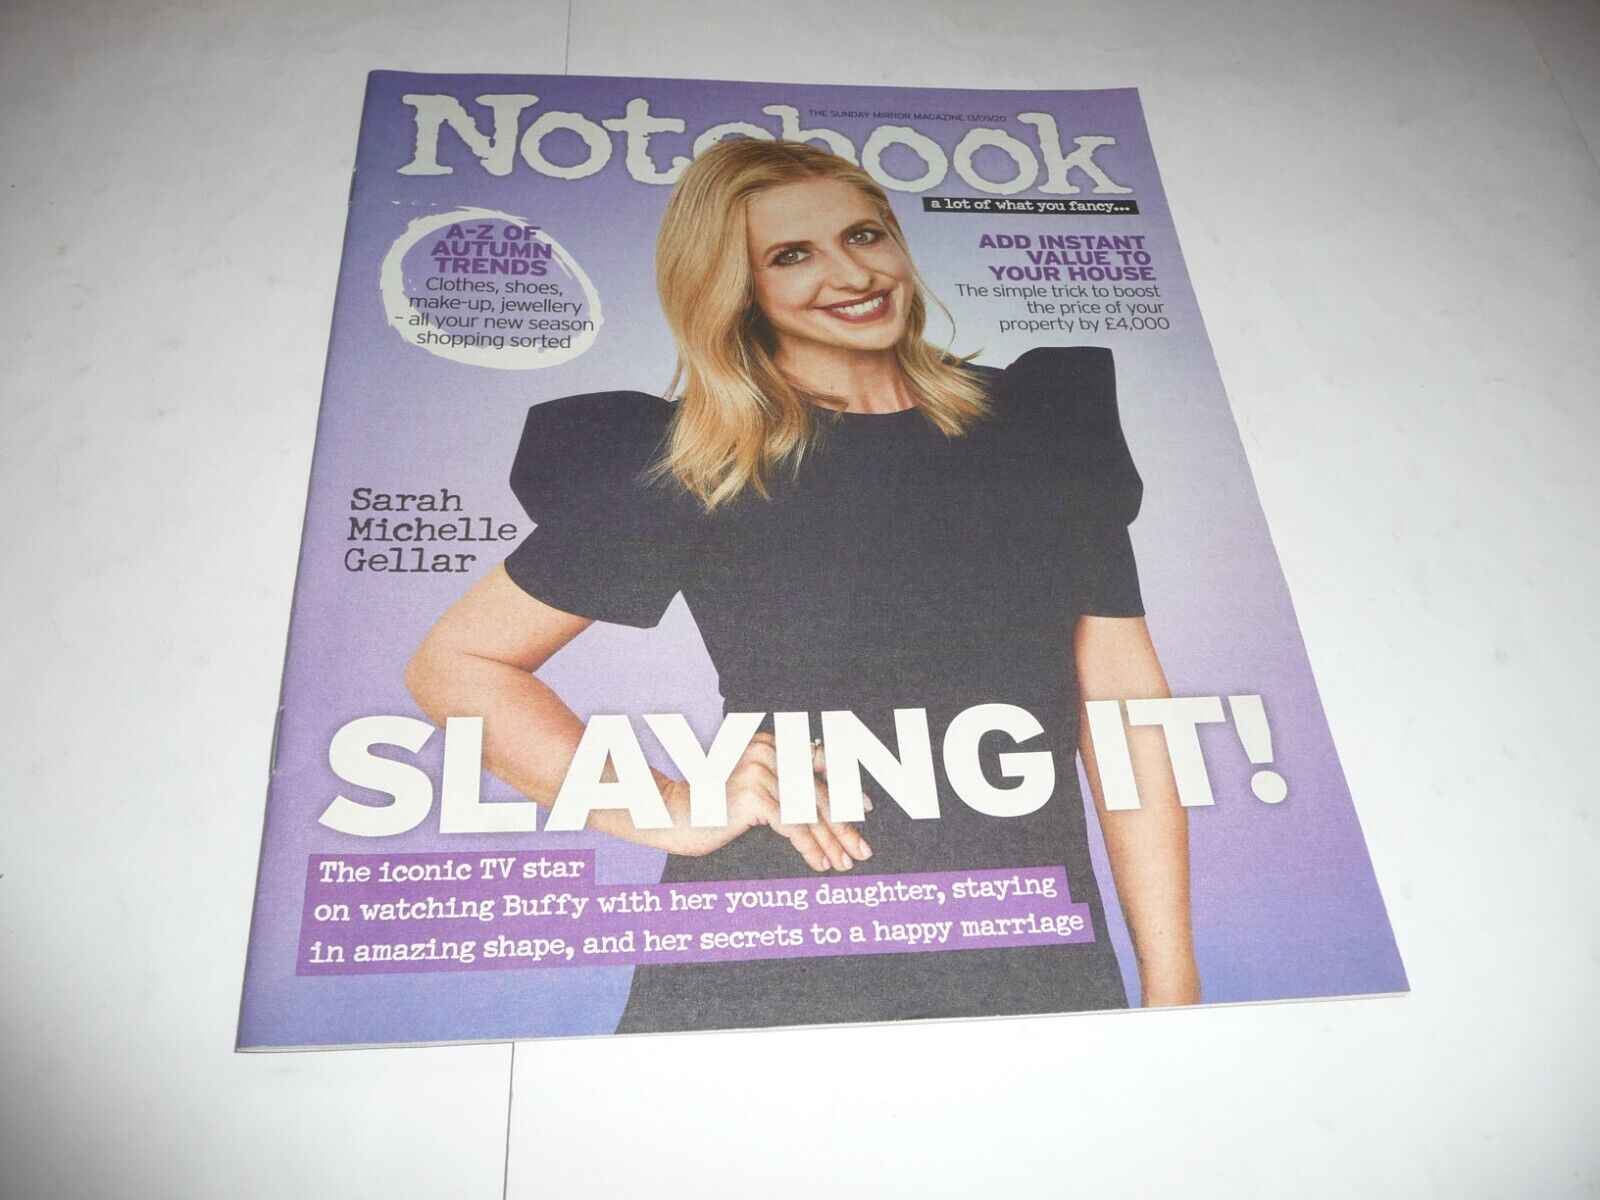 Sunday Mirror - Notebook Magazine (13/9/20) - Sarah Michelle Gellar cover